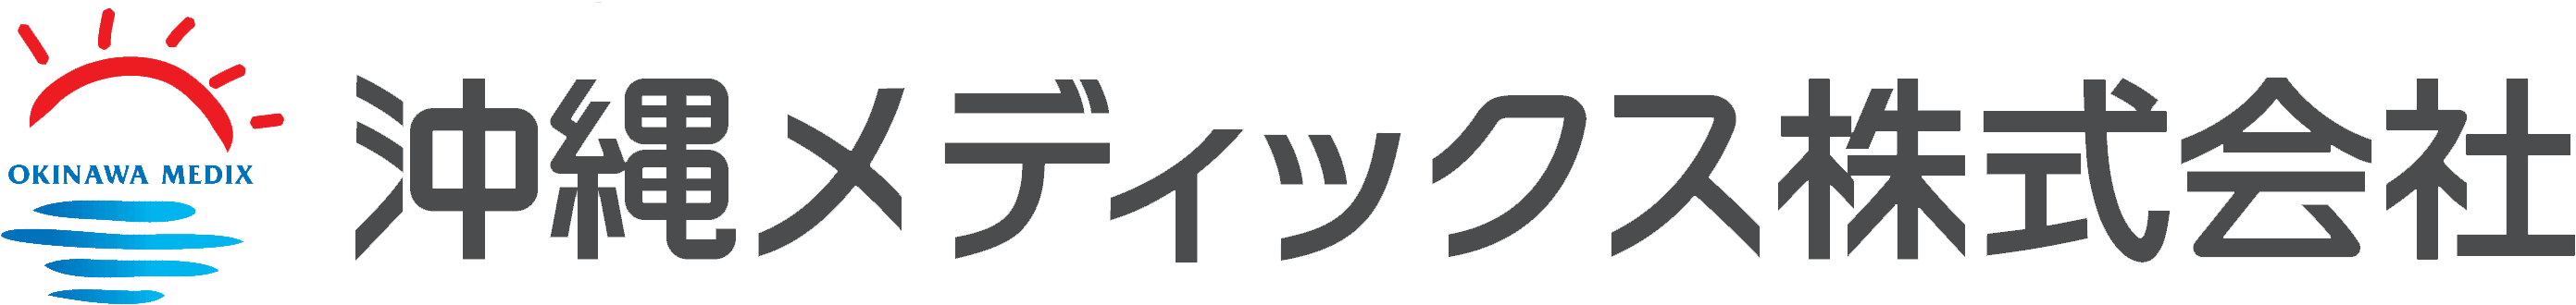 沖縄メディックス株式会社